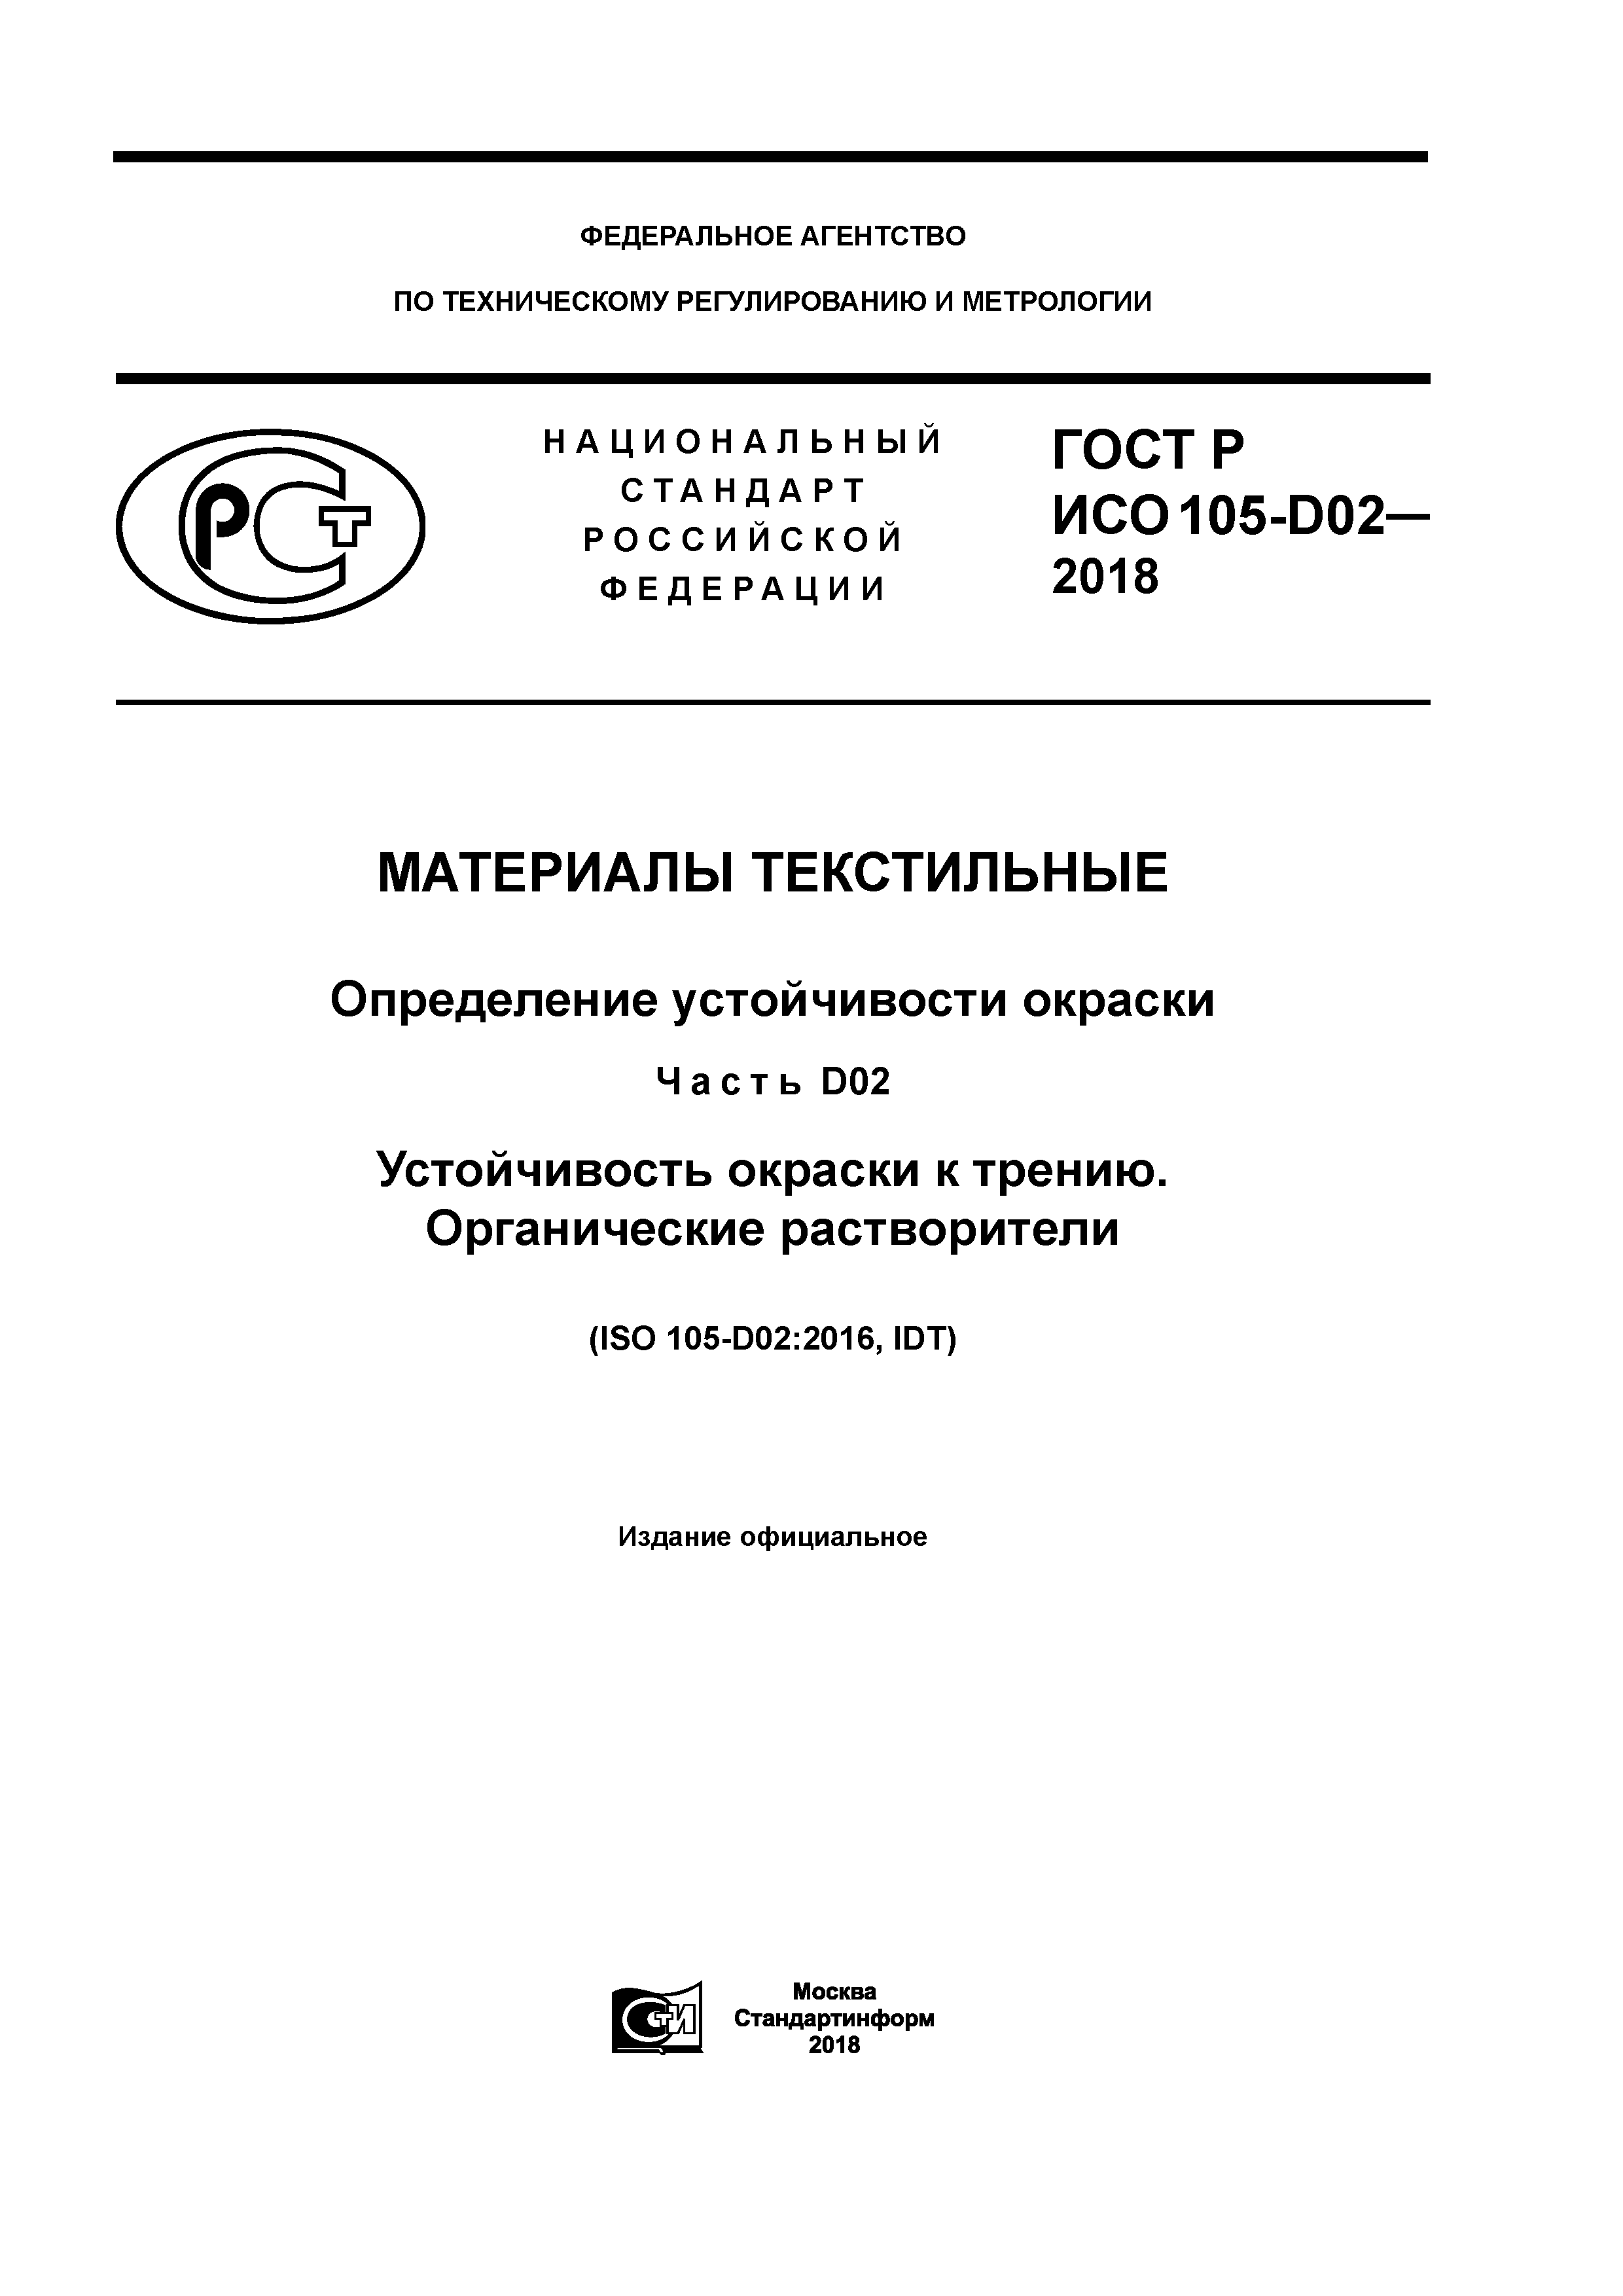 ГОСТ Р ИСО 105-D02-2018